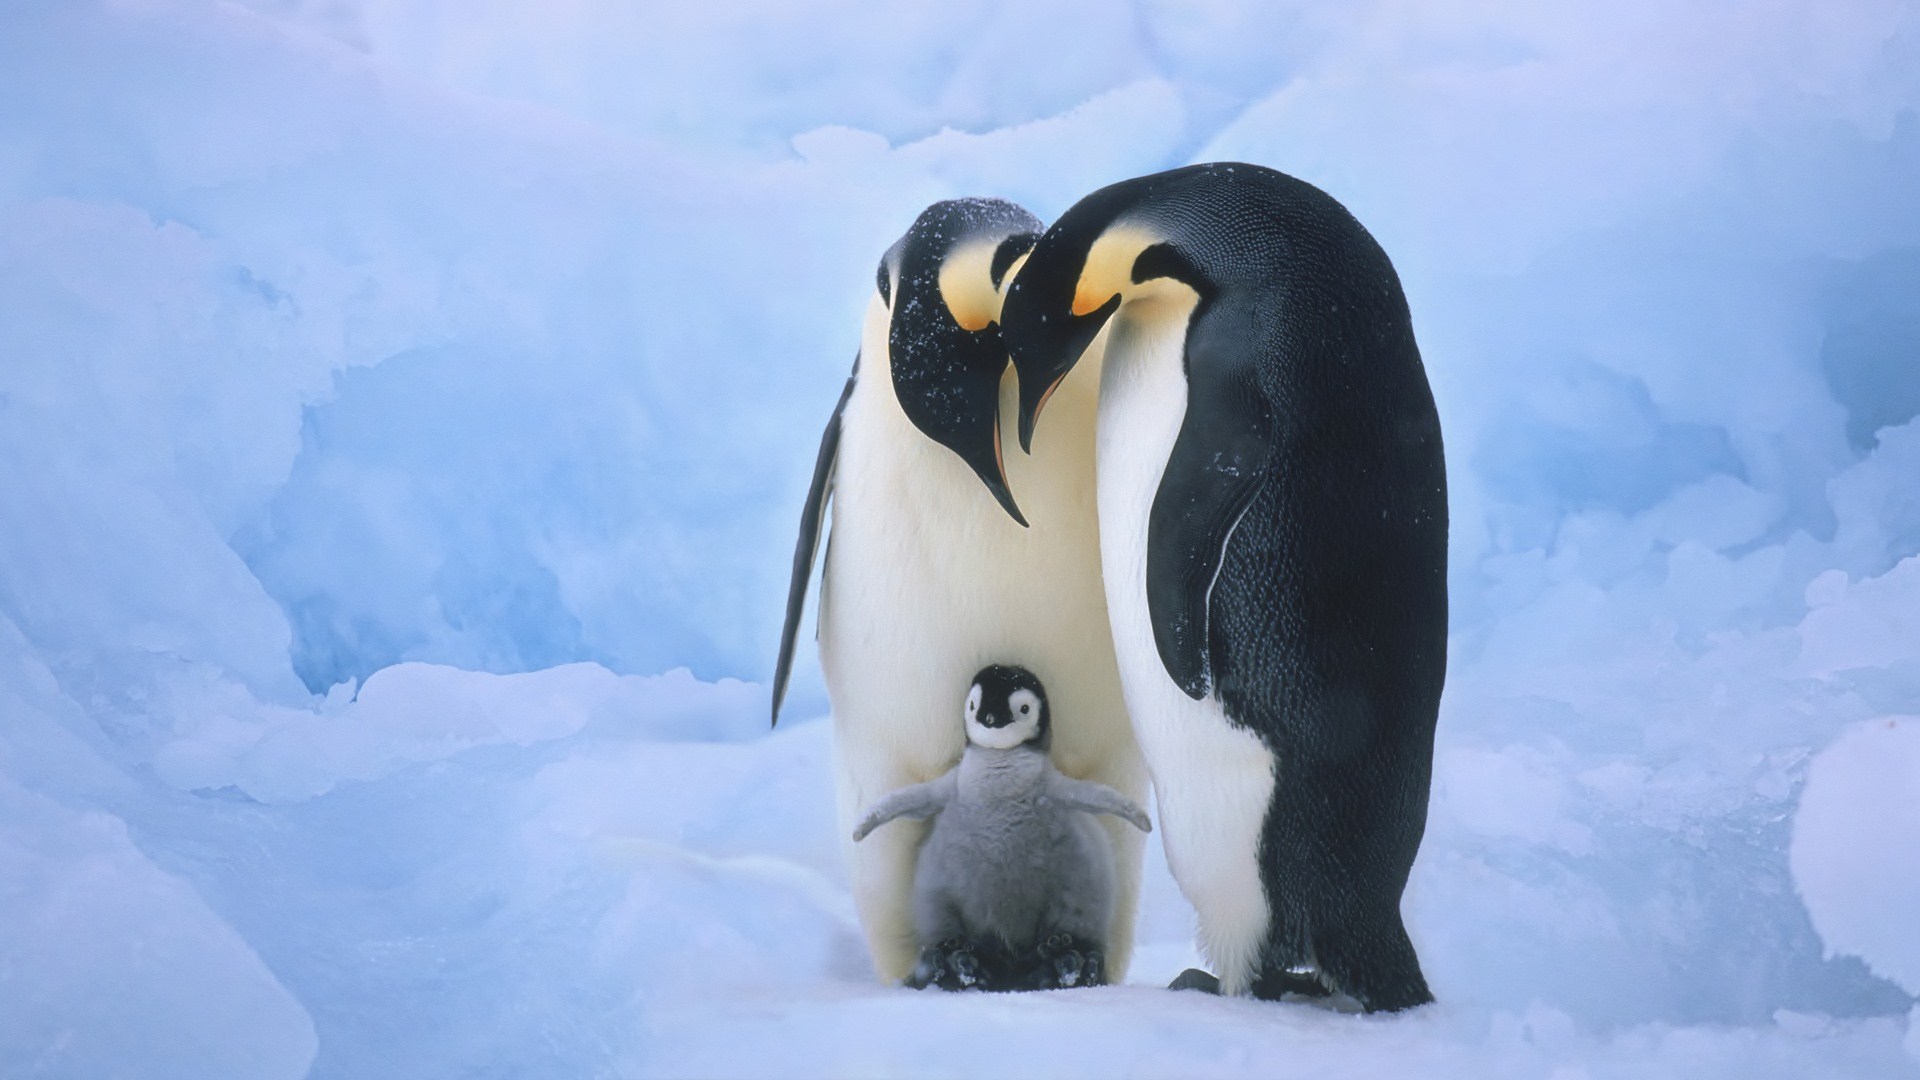 Tổng hợp các hình ảnh về chim cánh cụt dễ thương – Đặc điểm của loài chim cánh cụt - [Kích thước hình ảnh: 1920x1080 px]